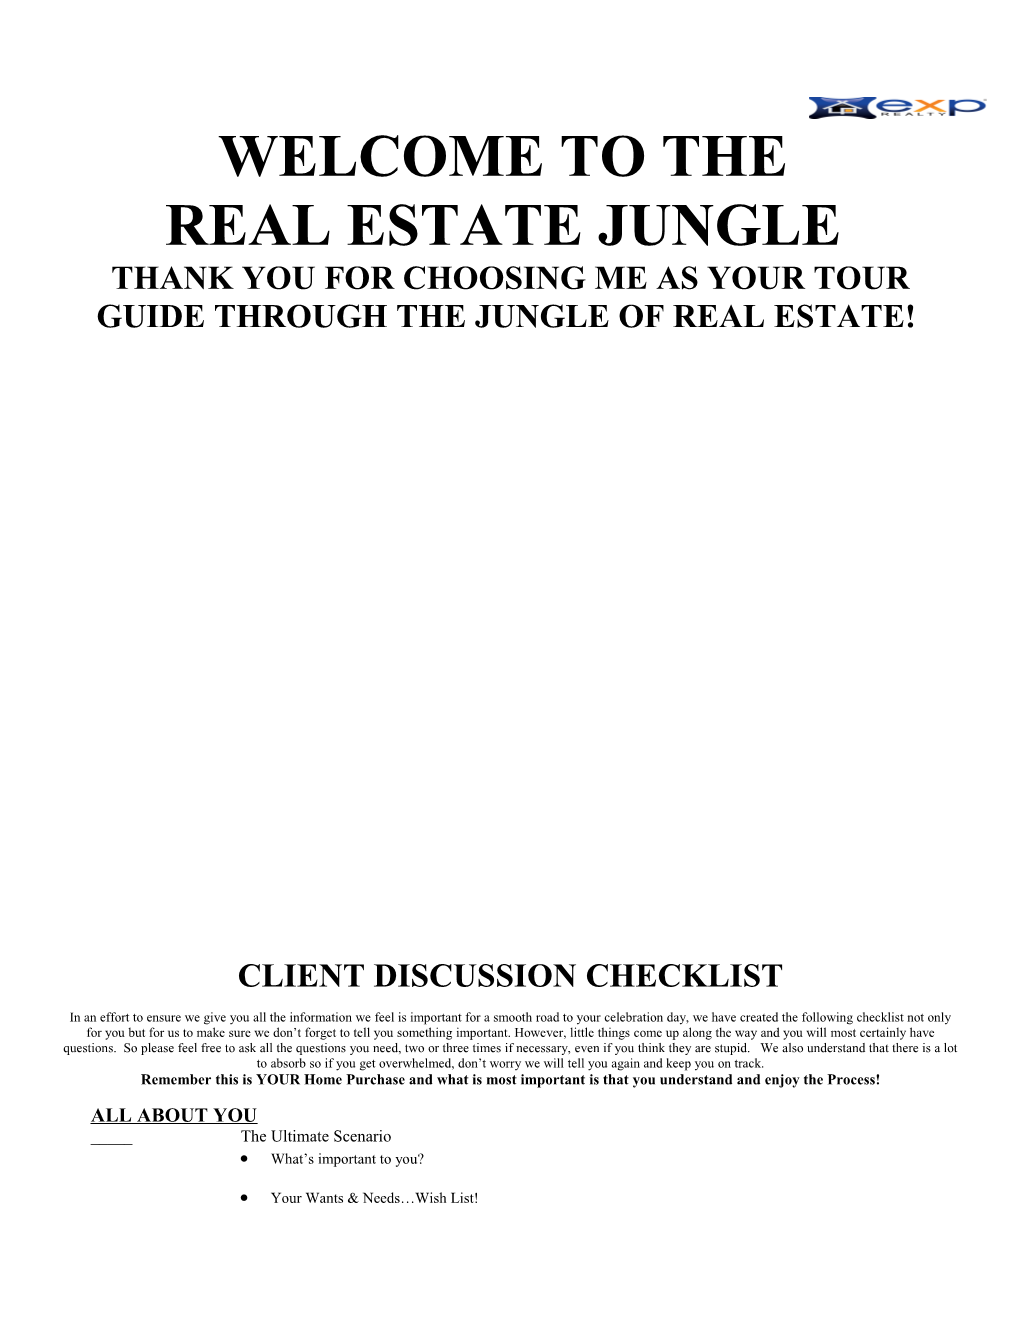 Real Estate Jungle